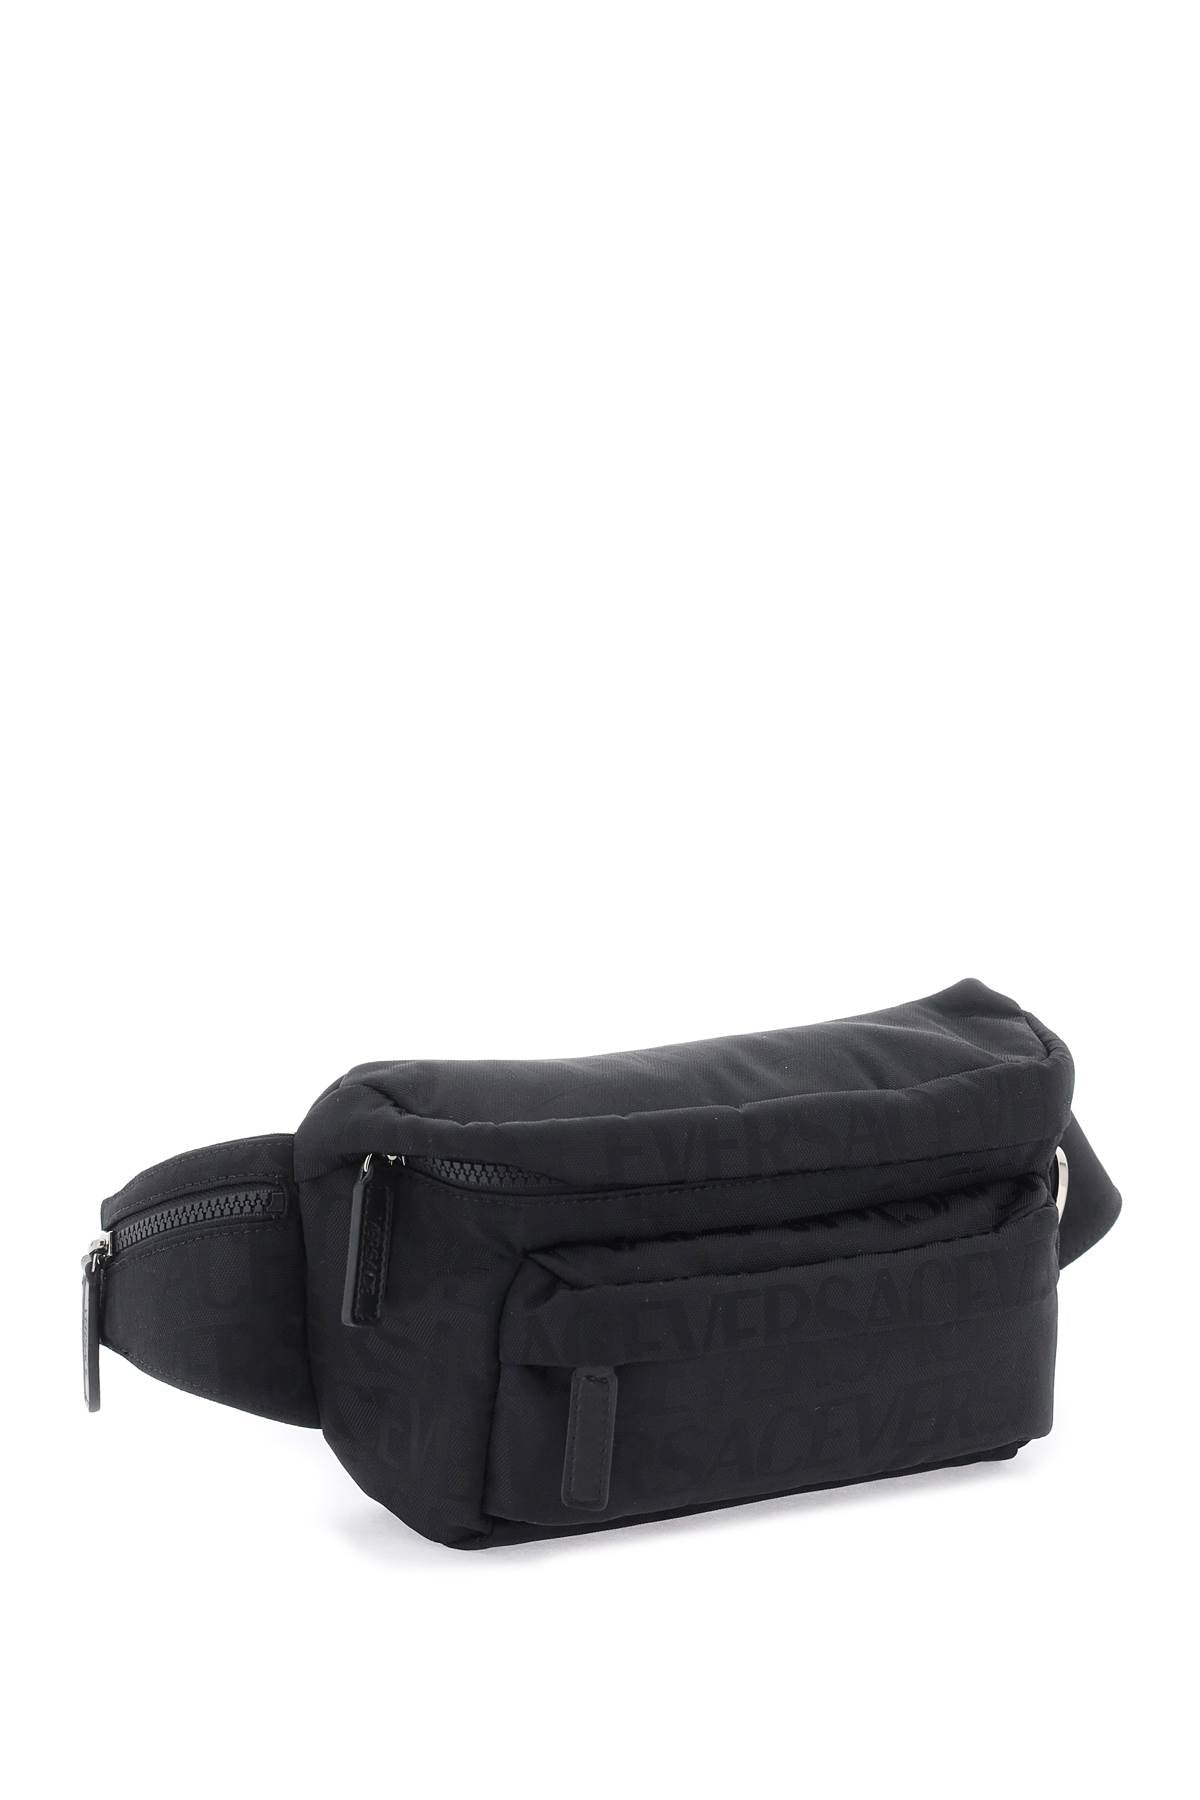 VERSACE Sleek and Sophisticated Black Belt Bag for Men - FW23